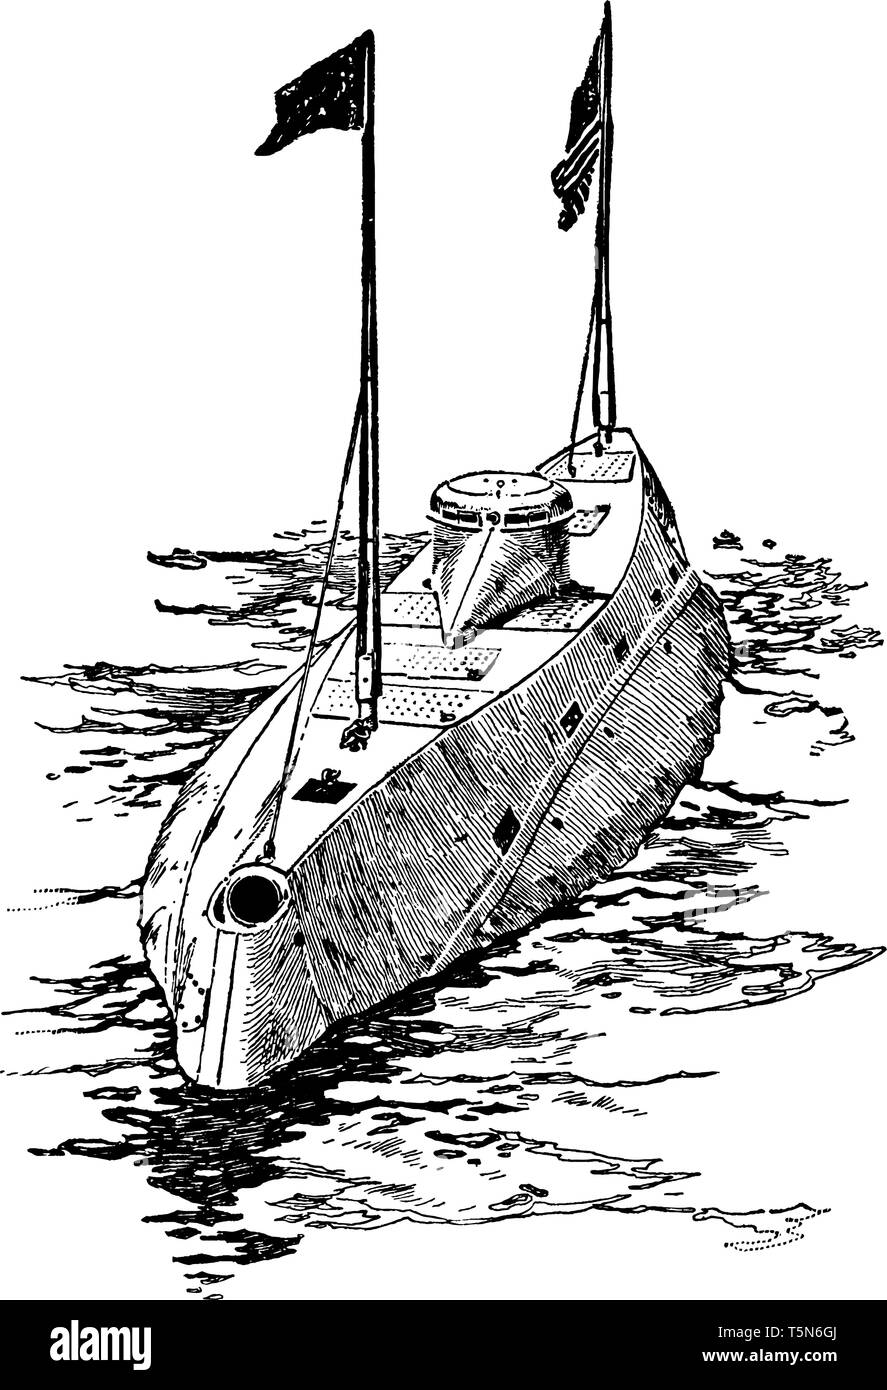 Спасательная лодка рисунок